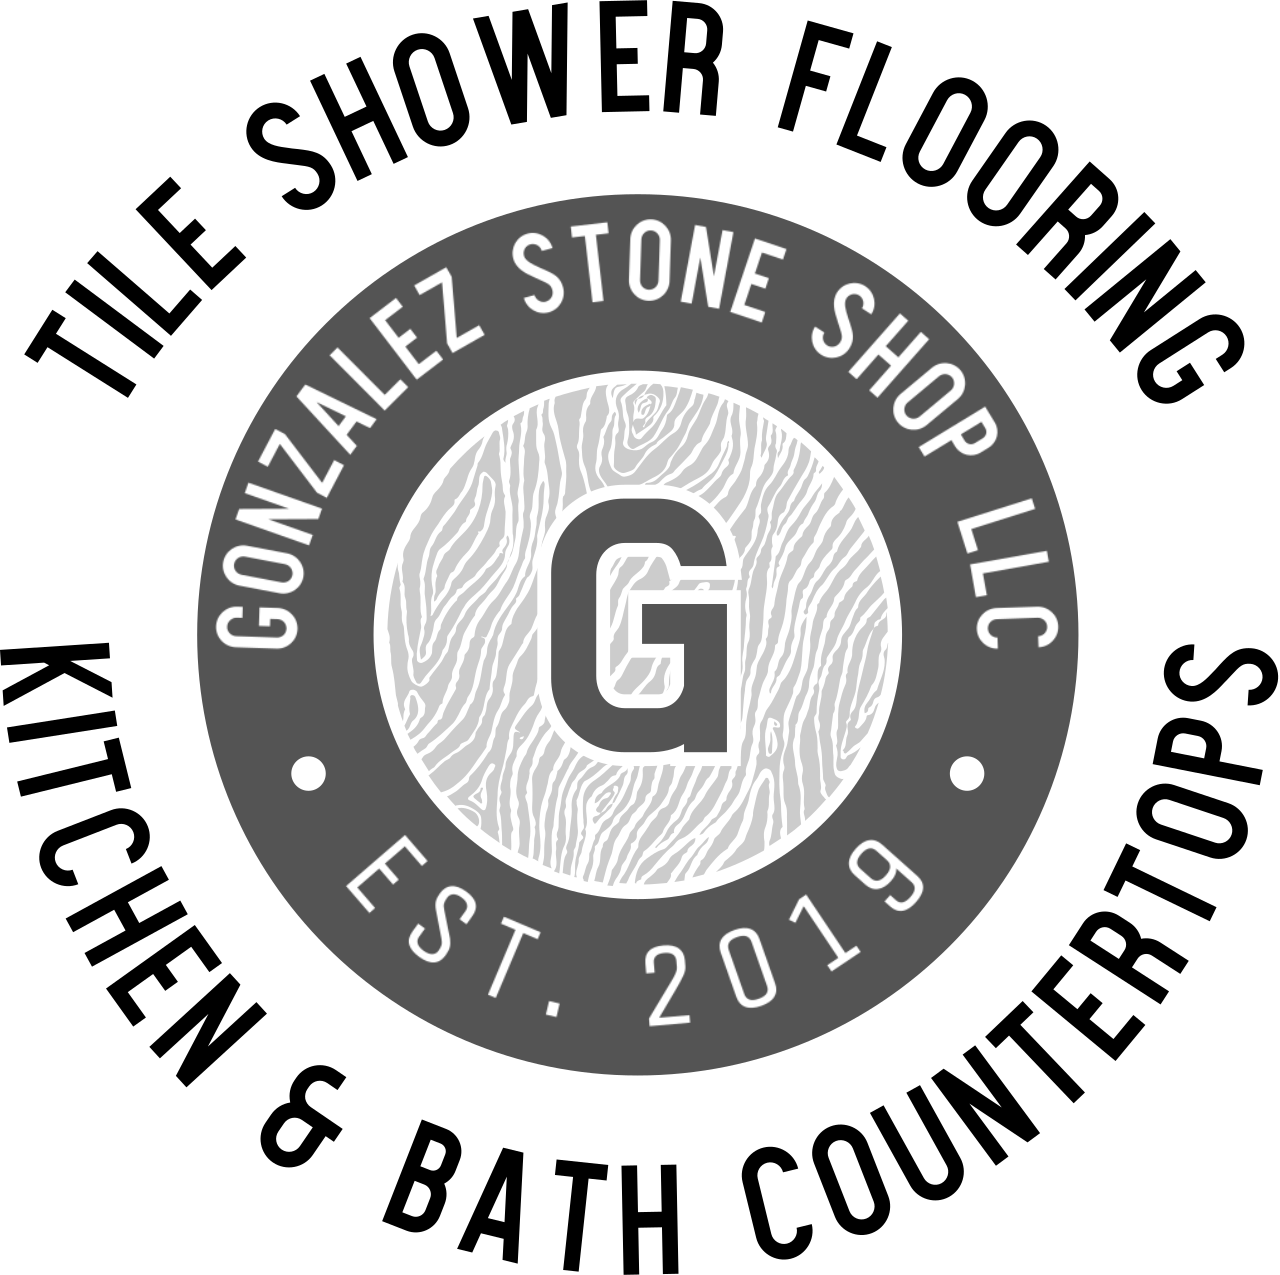 GONZALEZ STONE SHOP LLC's web page